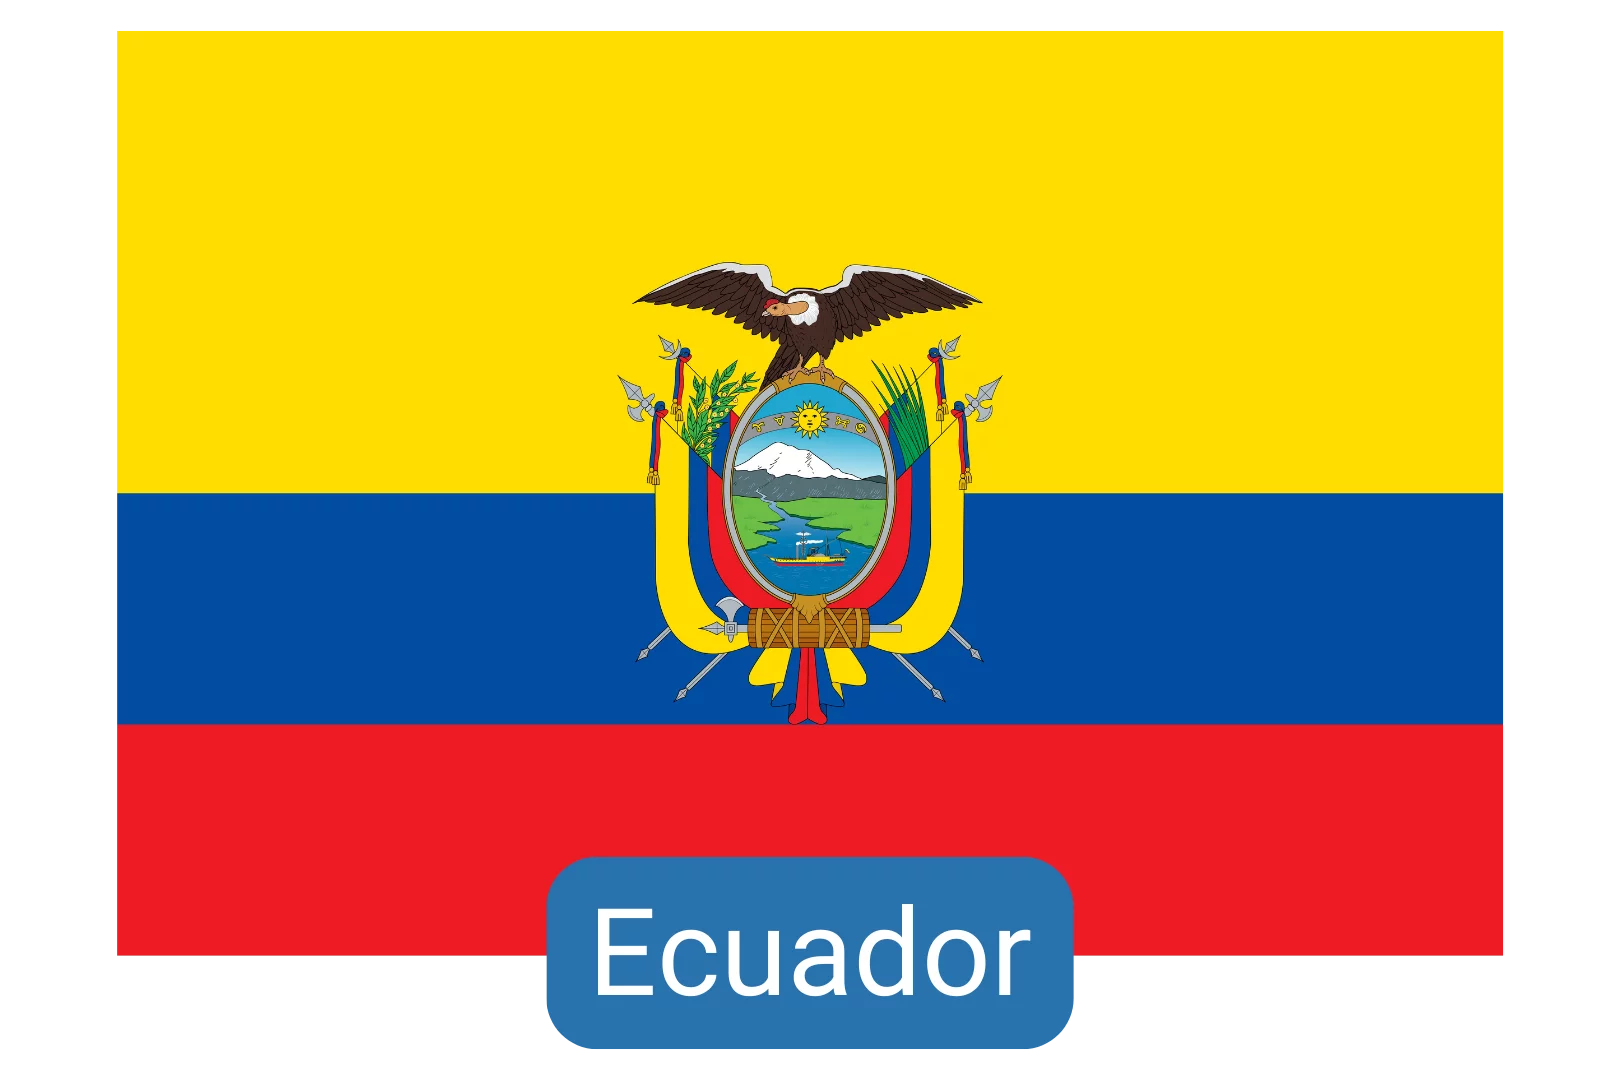 Ecuador Clinical Elective